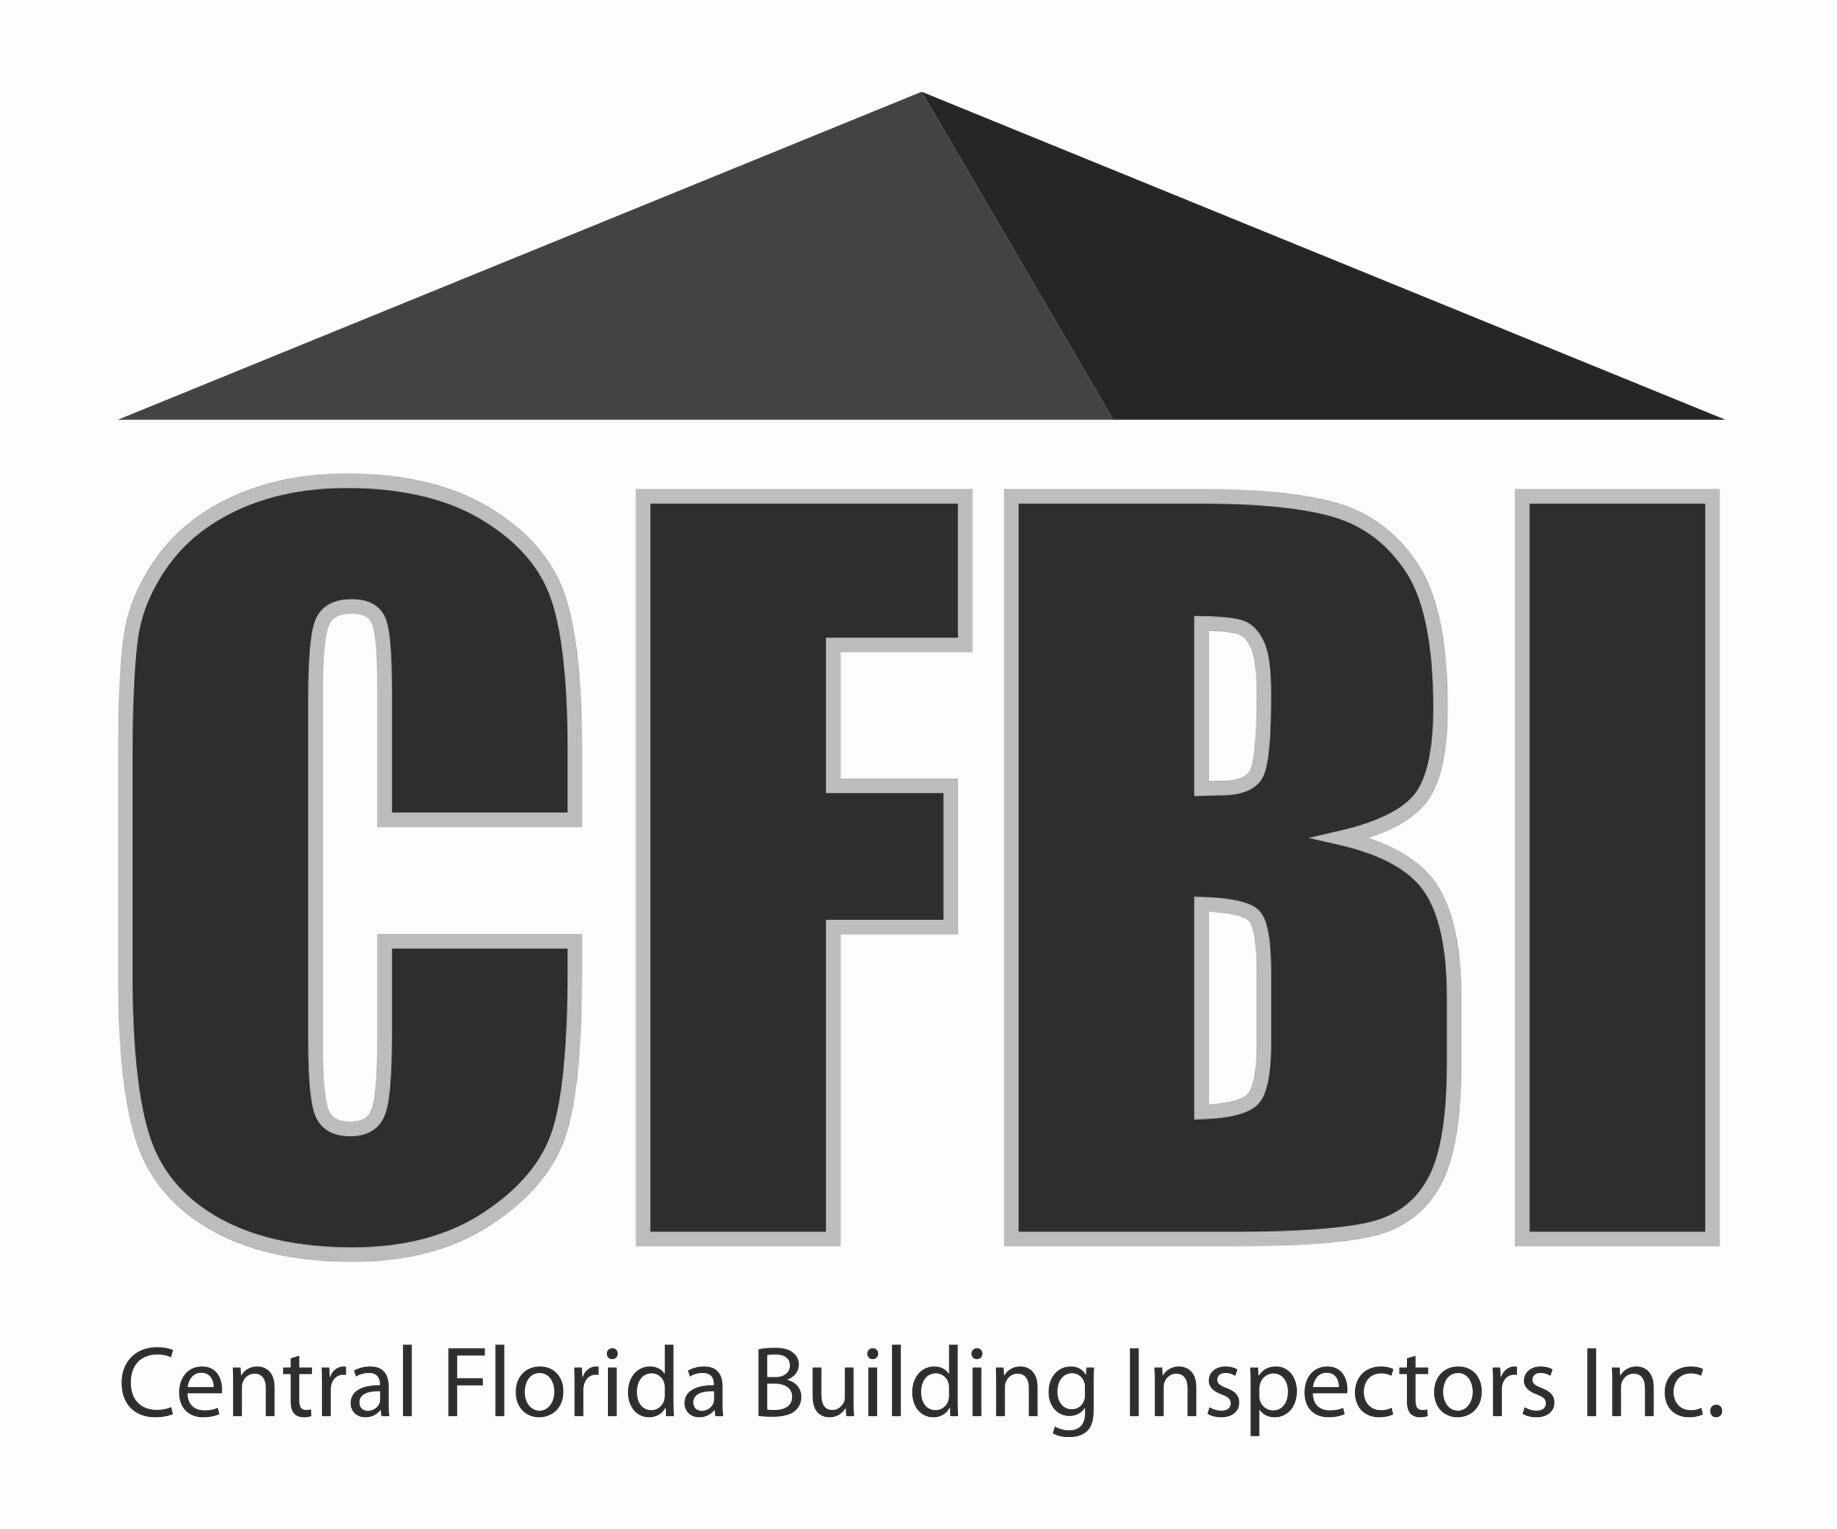 Central Florida Building Inspectors Inc.